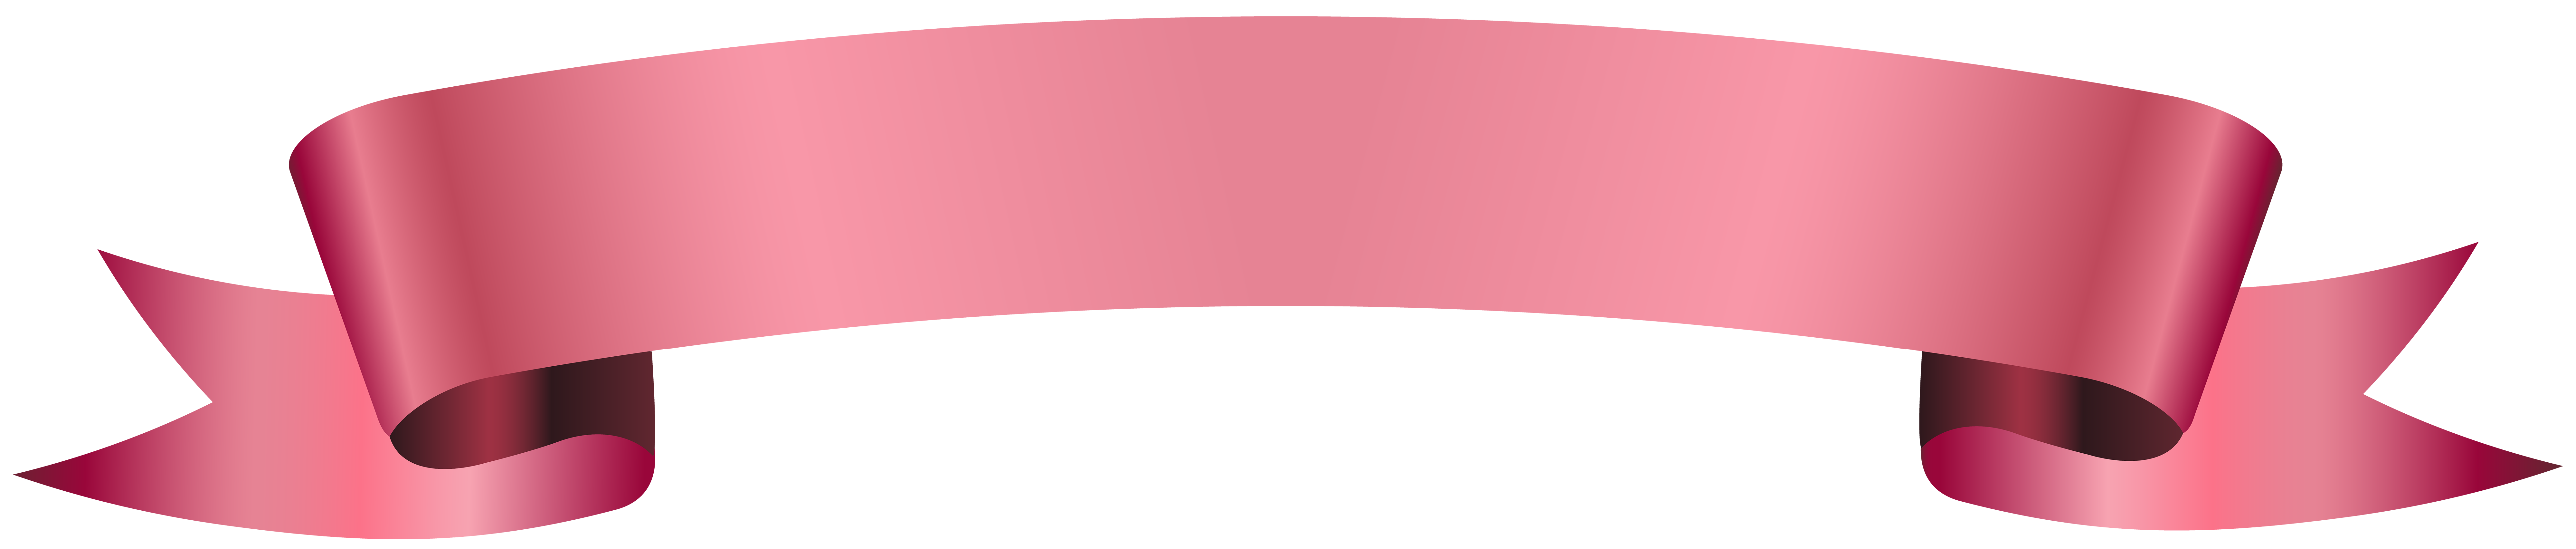 Banner pink transparent.